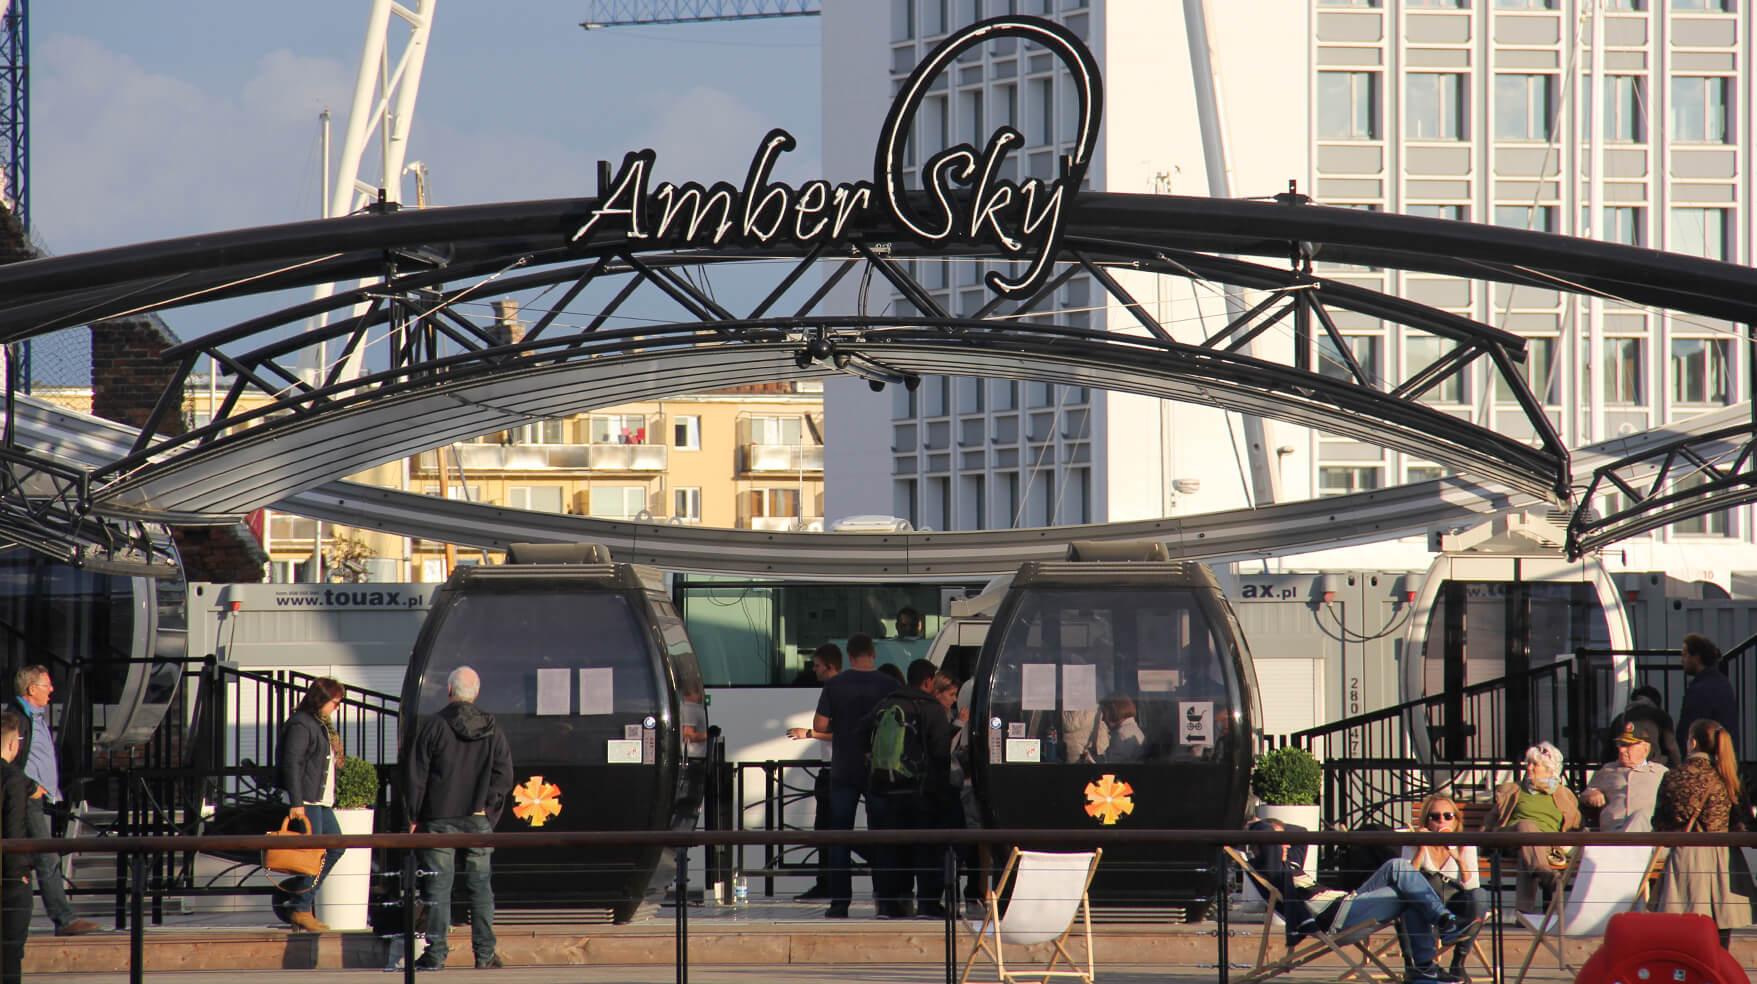 Amber Sky - Amber Sky - enseigne au néon blanche avec le nom de la société placé sur un cadre